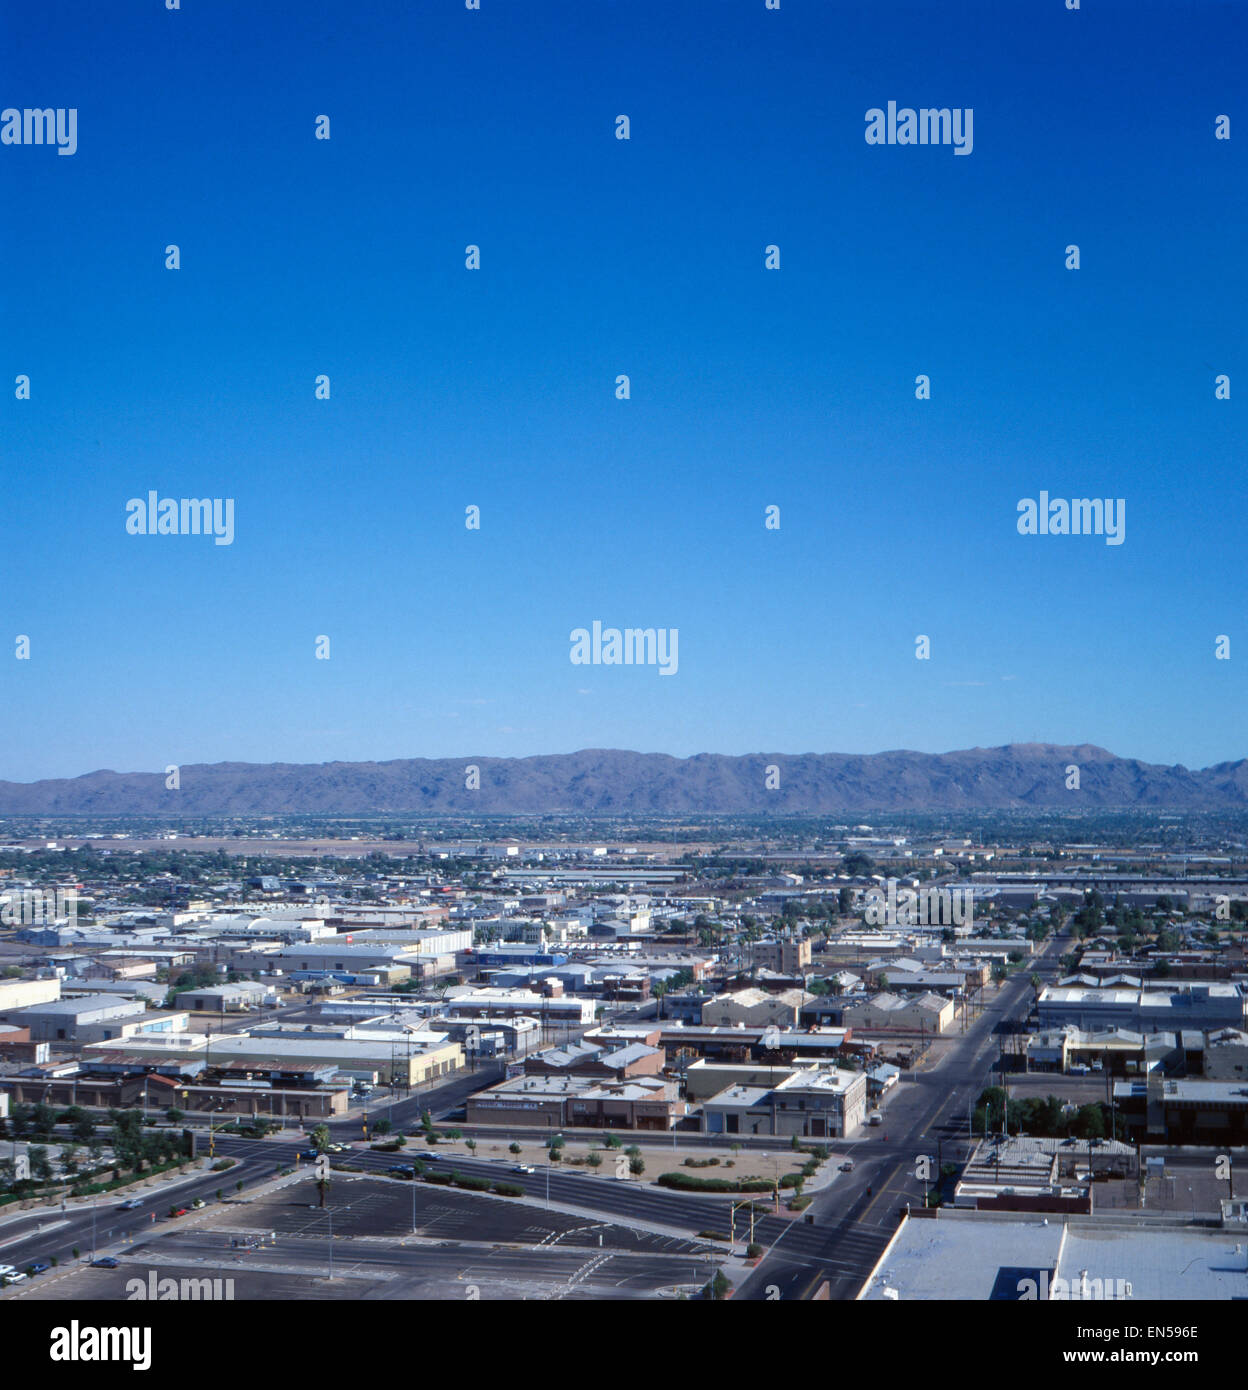 Die Skyline von Phoenix, Arizona, USA 1970er Jahre. Skyline of Phoenix, Arizona, US 1970s. Stock Photo